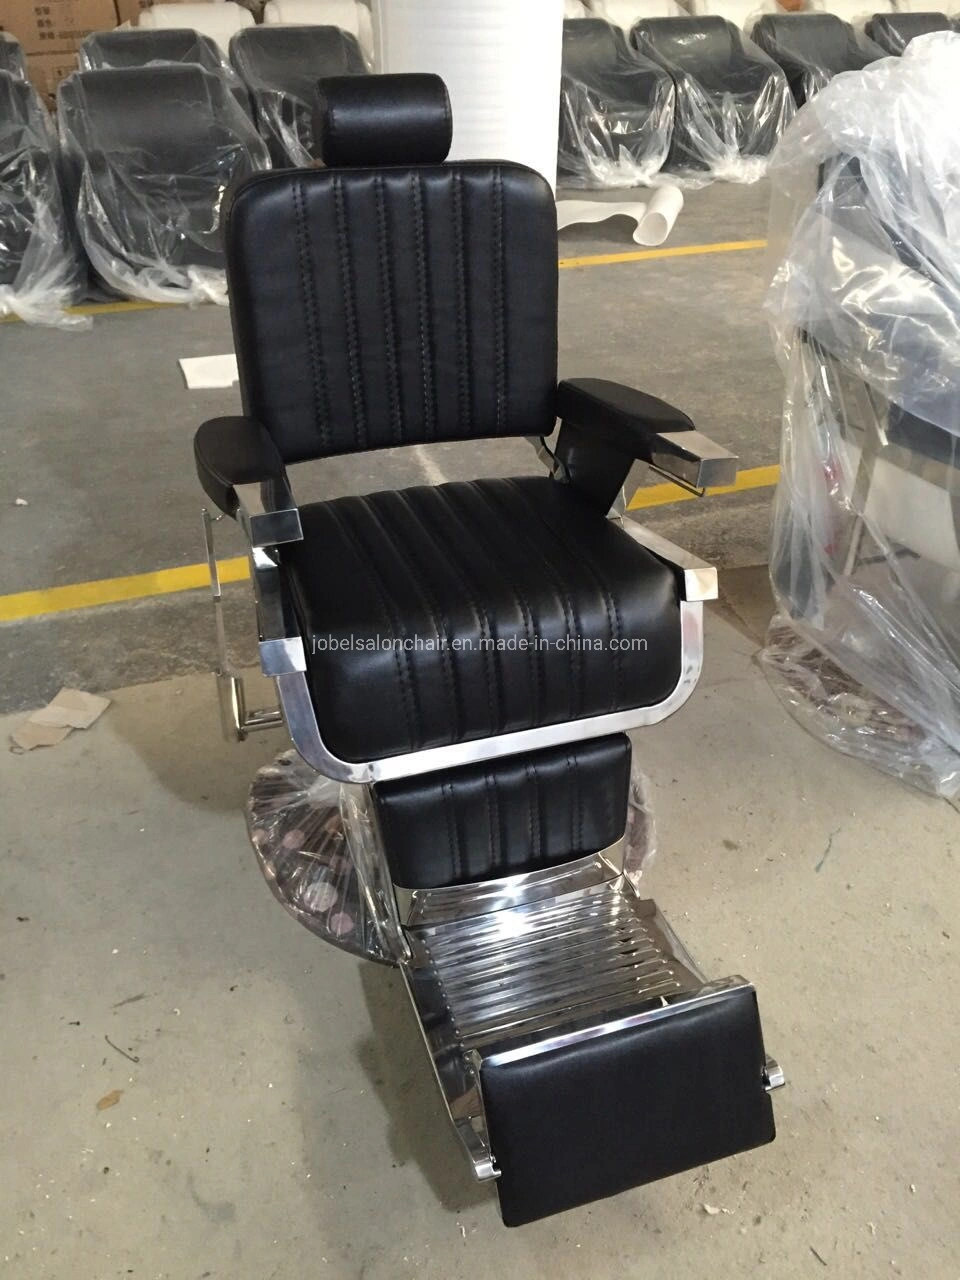 Big Hydraulic Barber Chair Wholease Salon Chair Supplies Salon Möbel Ausrüstung